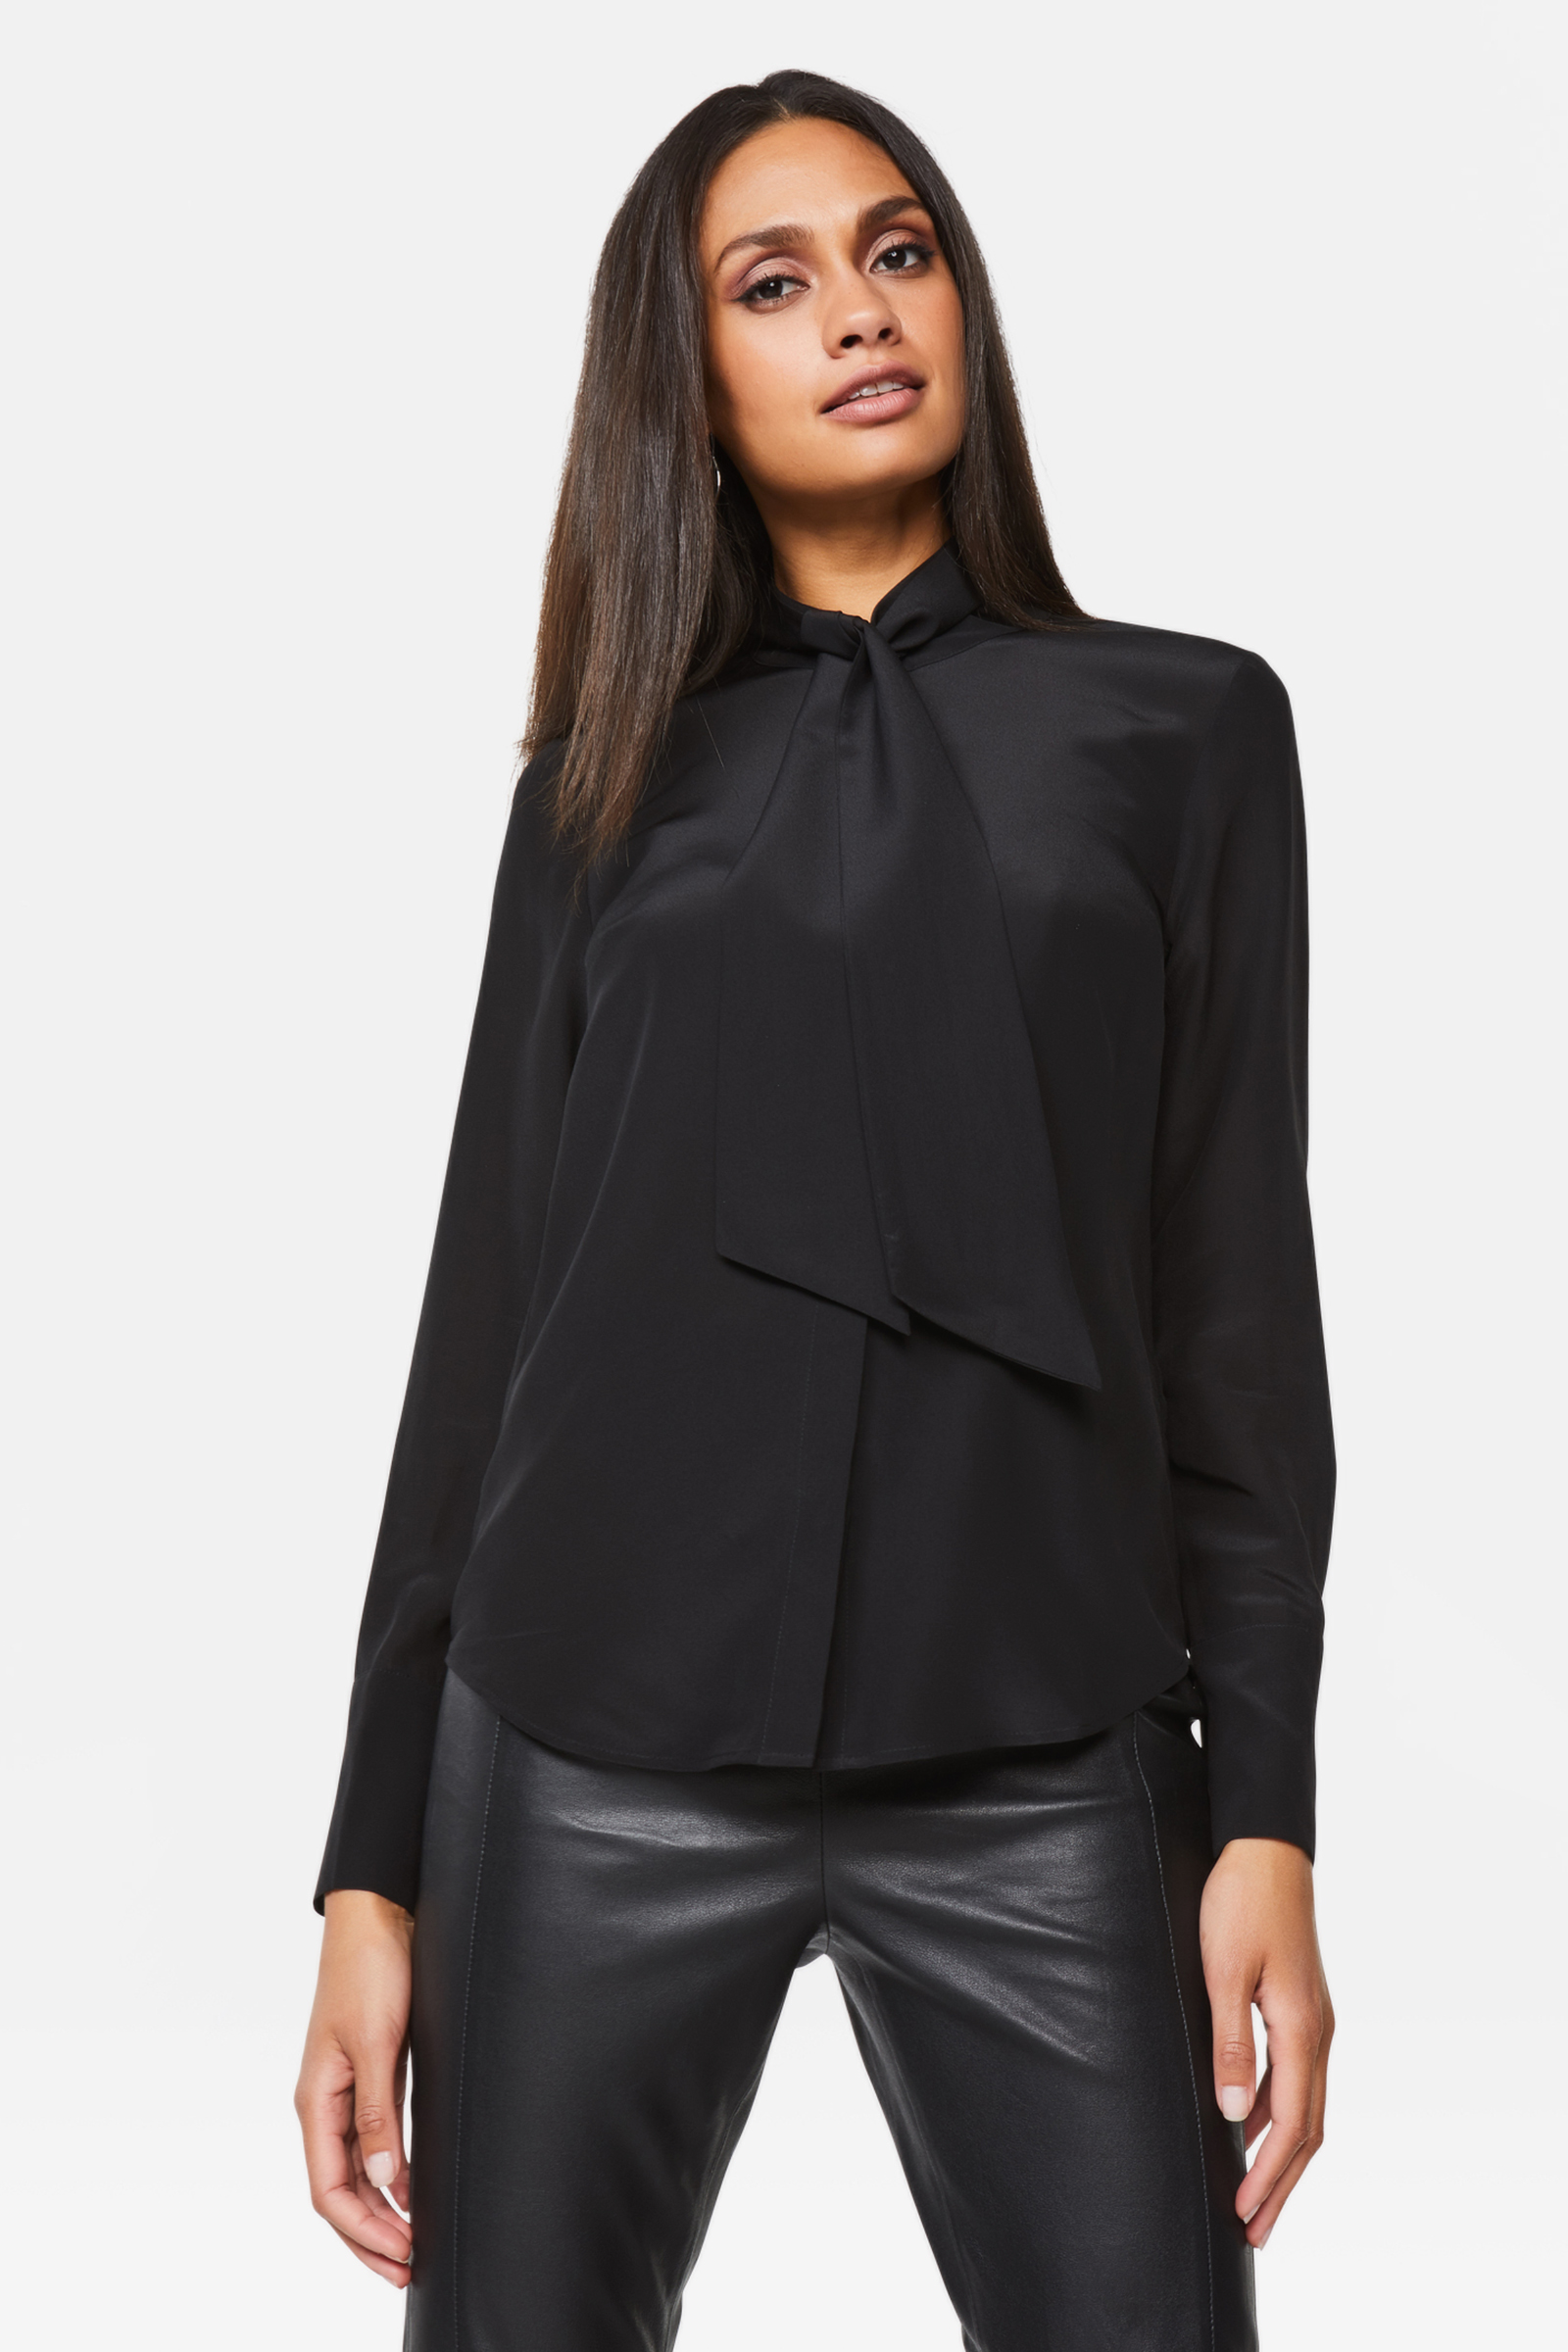 Georges Rech Zijden blouse zwart casual uitstraling Mode Blouses Zijden blouses 